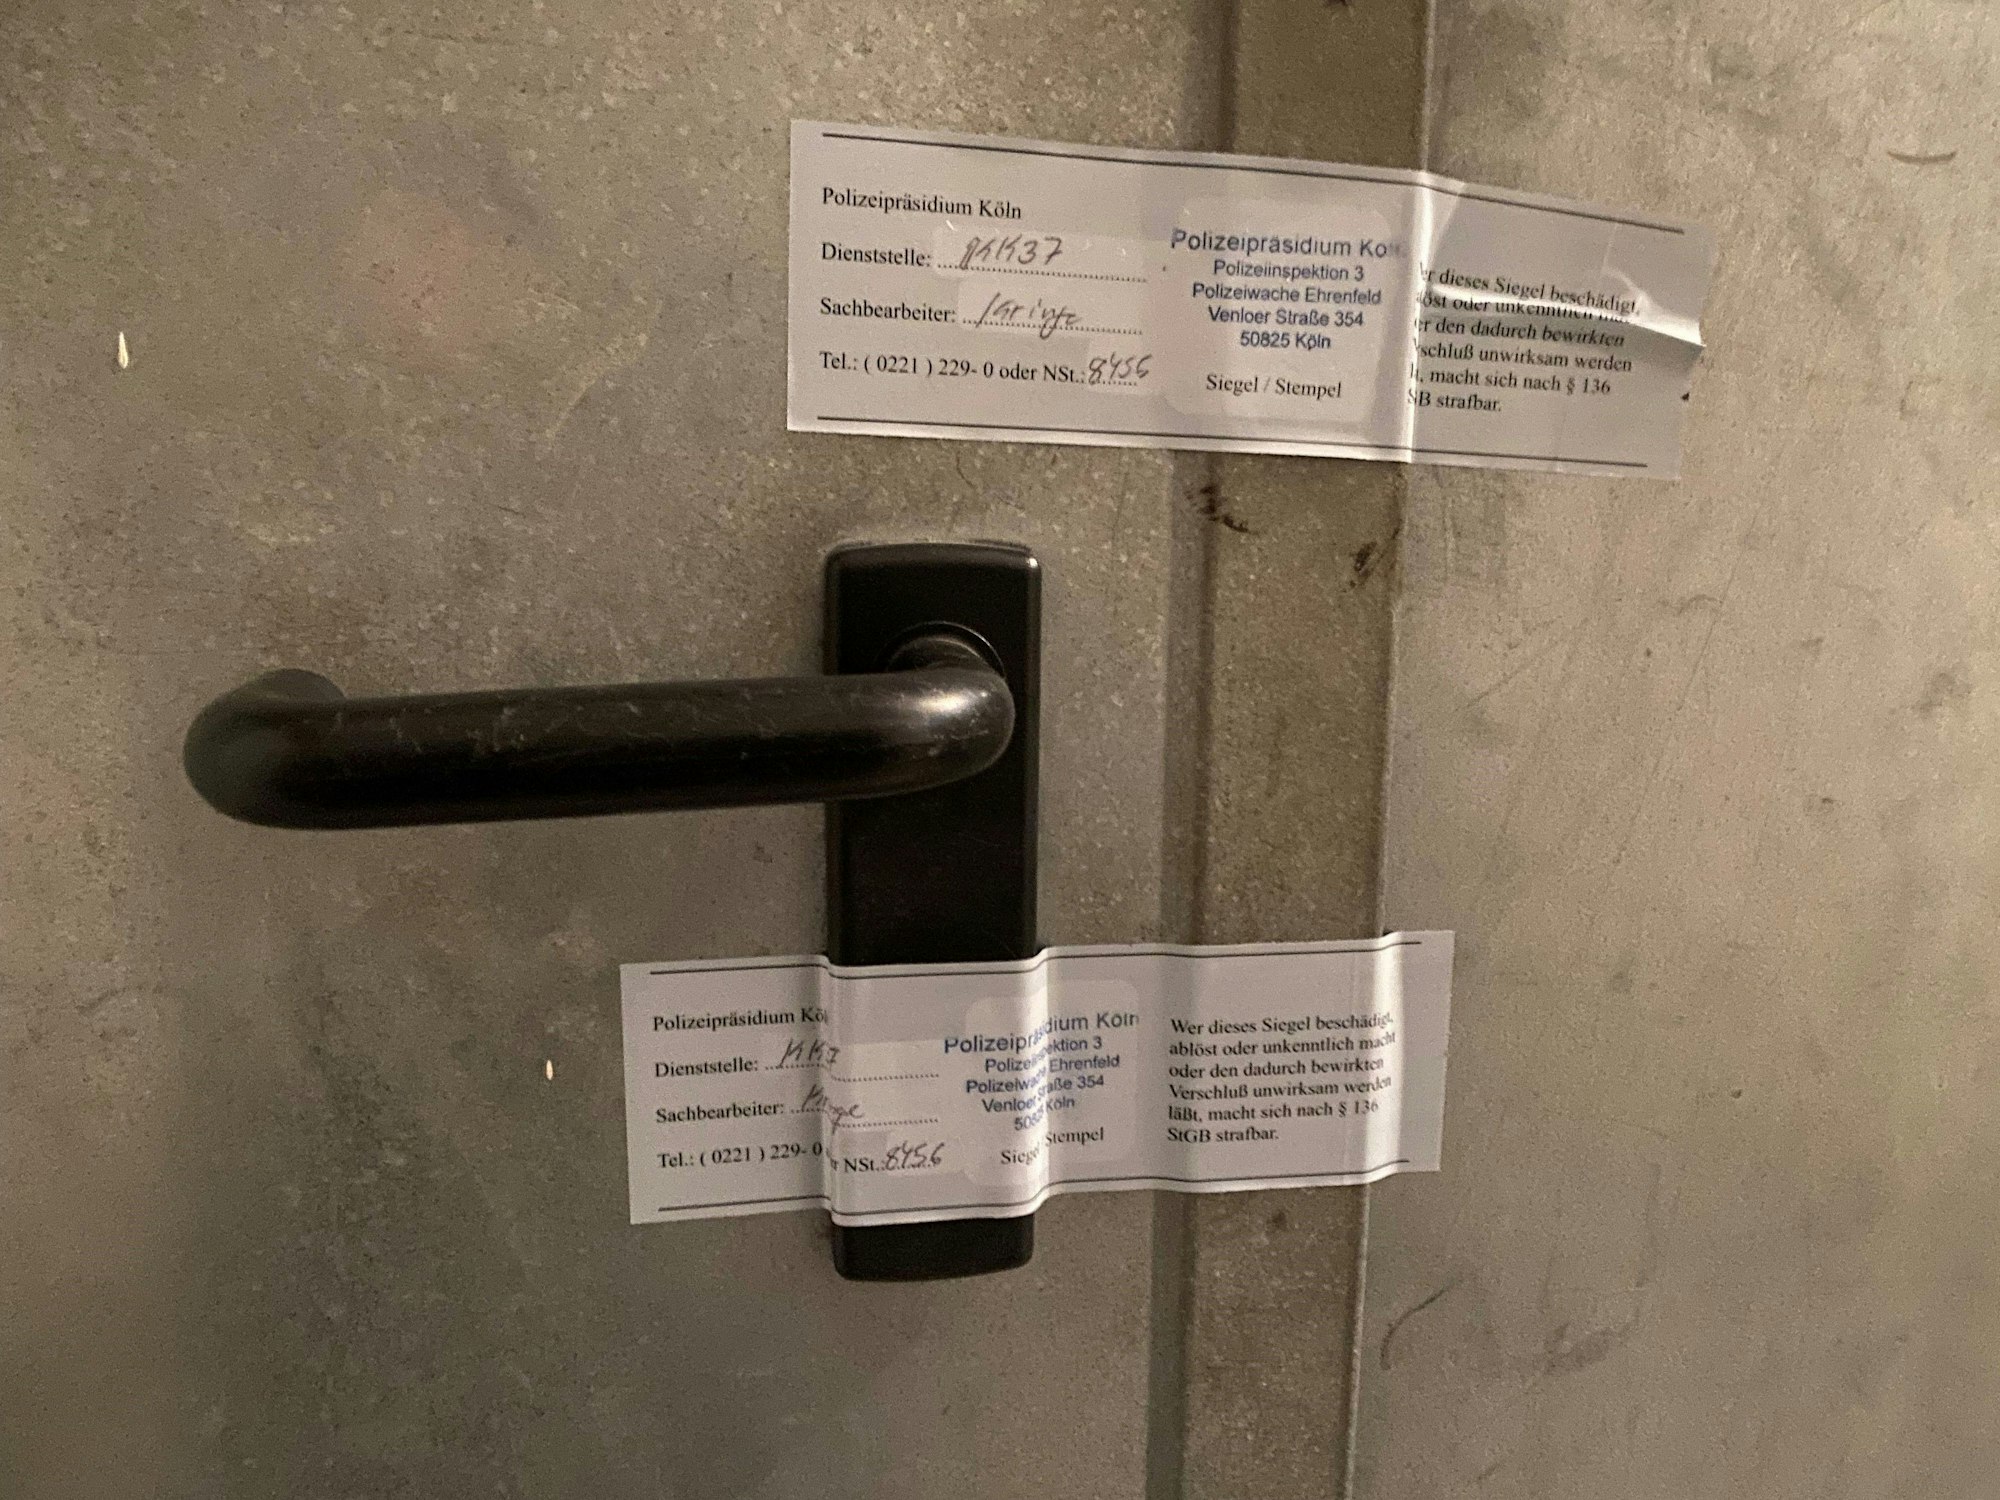 Ein Kleber an einer Tür zeigt Zutritt verboten.